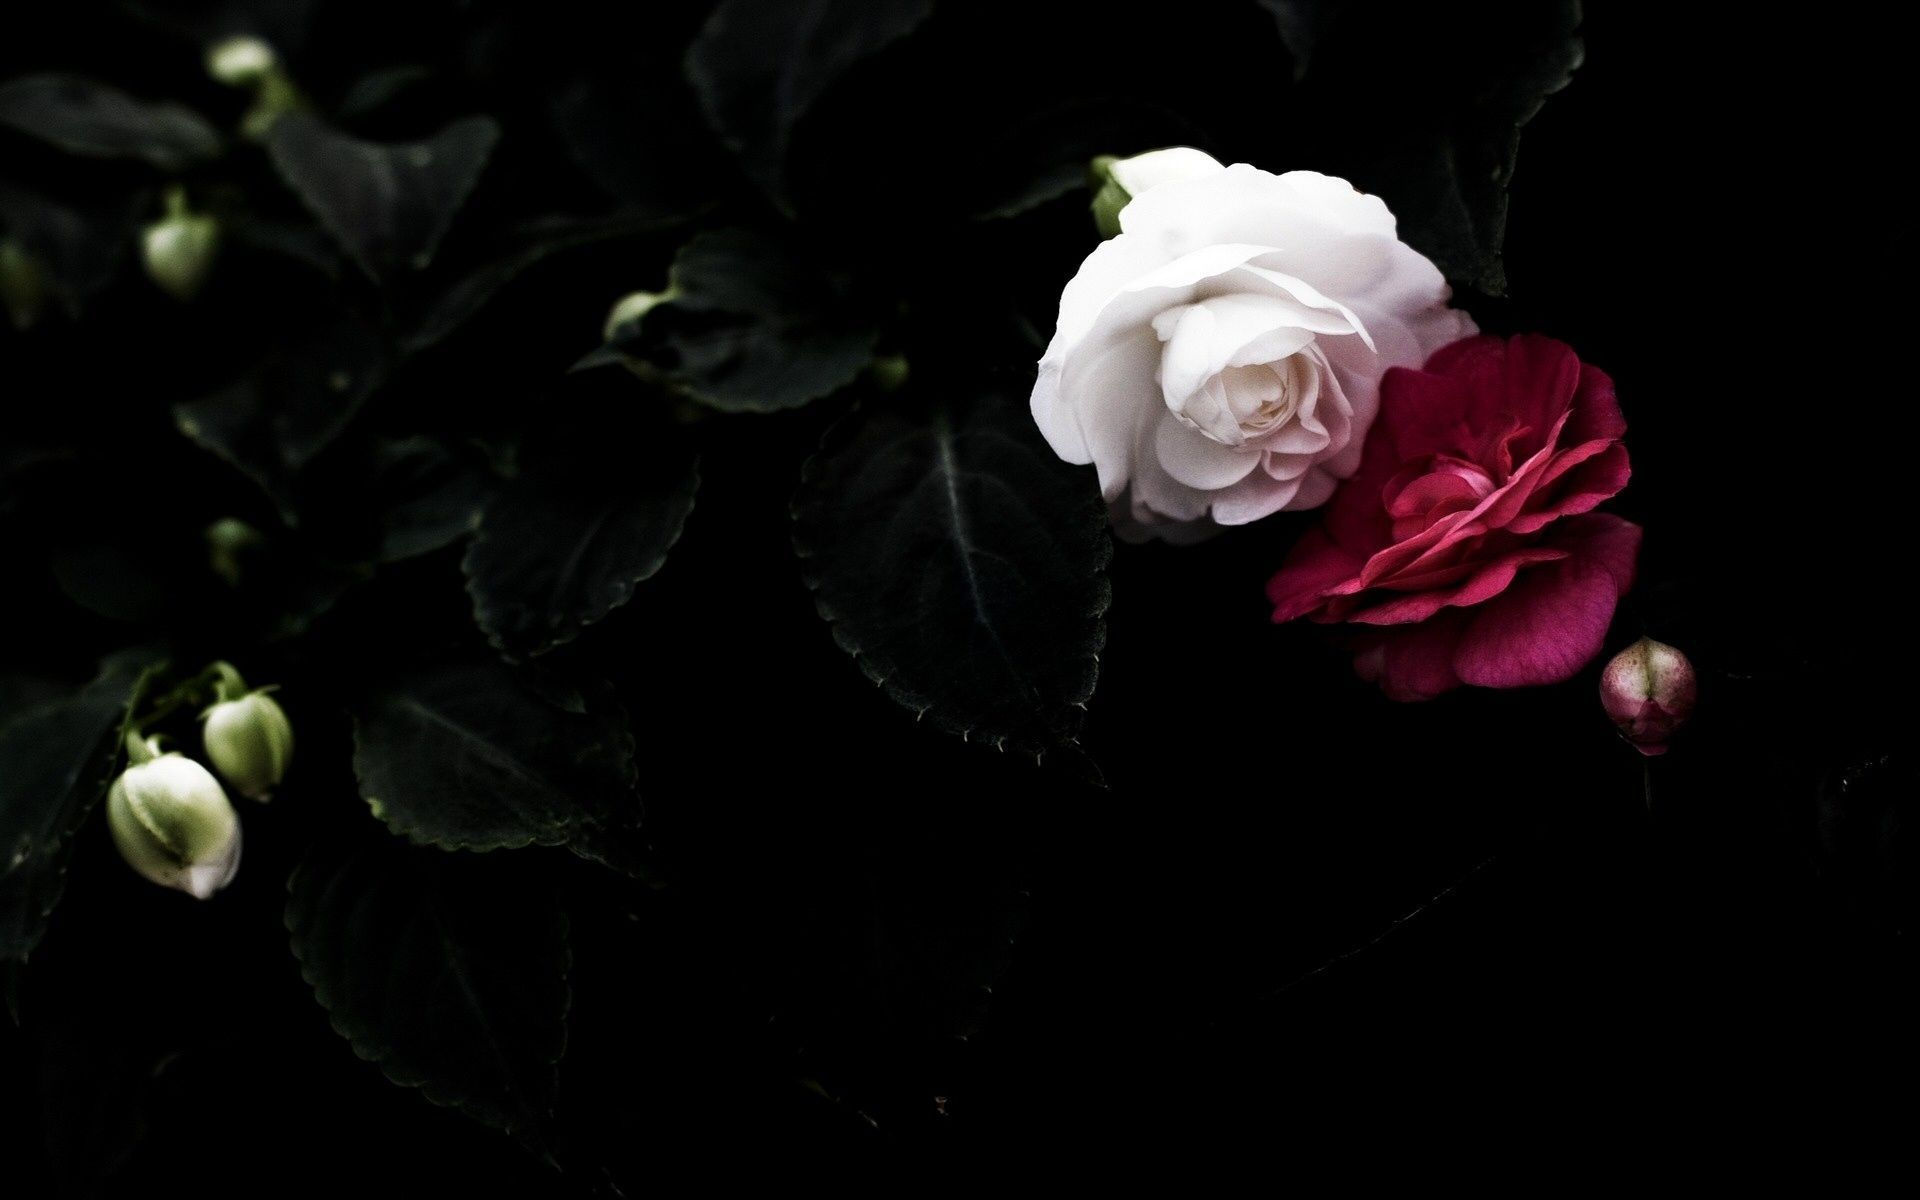 Black Rose Background. Flower background wallpaper, Black rose